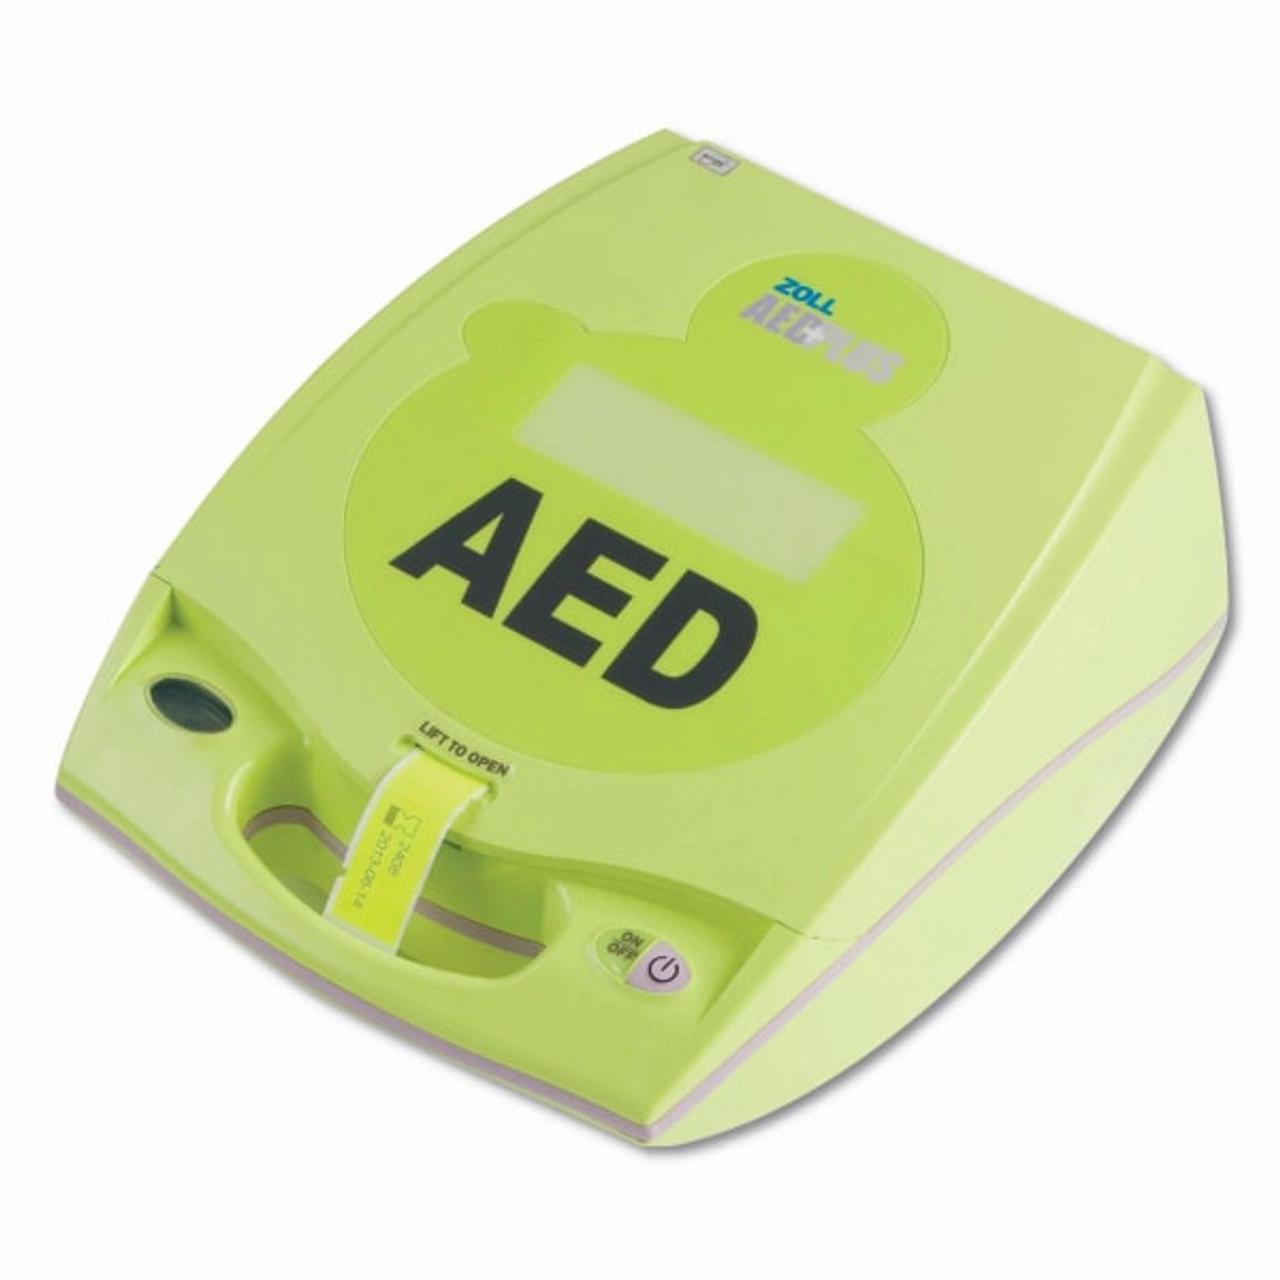 Llandegla Community Defibrillator